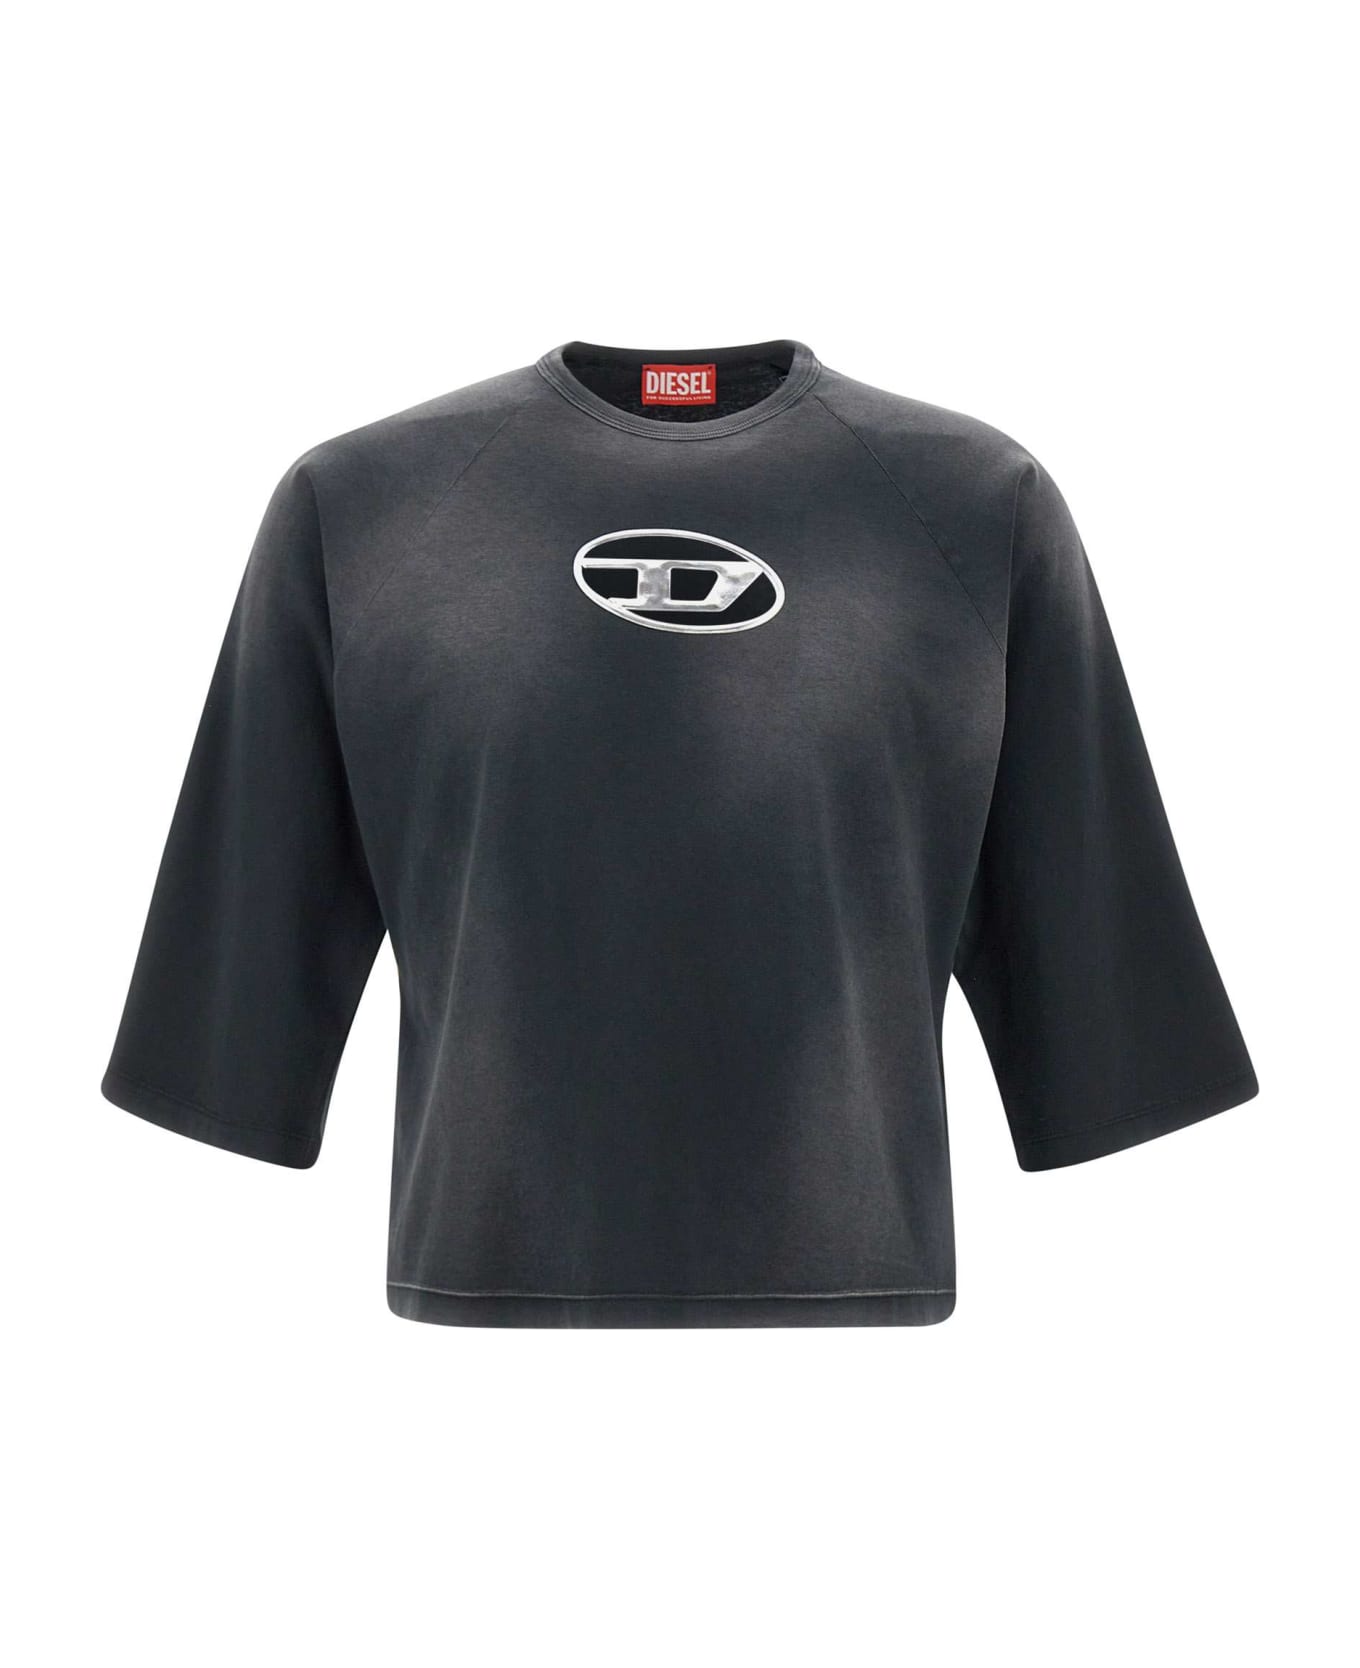 Diesel "t Croxt" Cotton T-shirt - BLACK